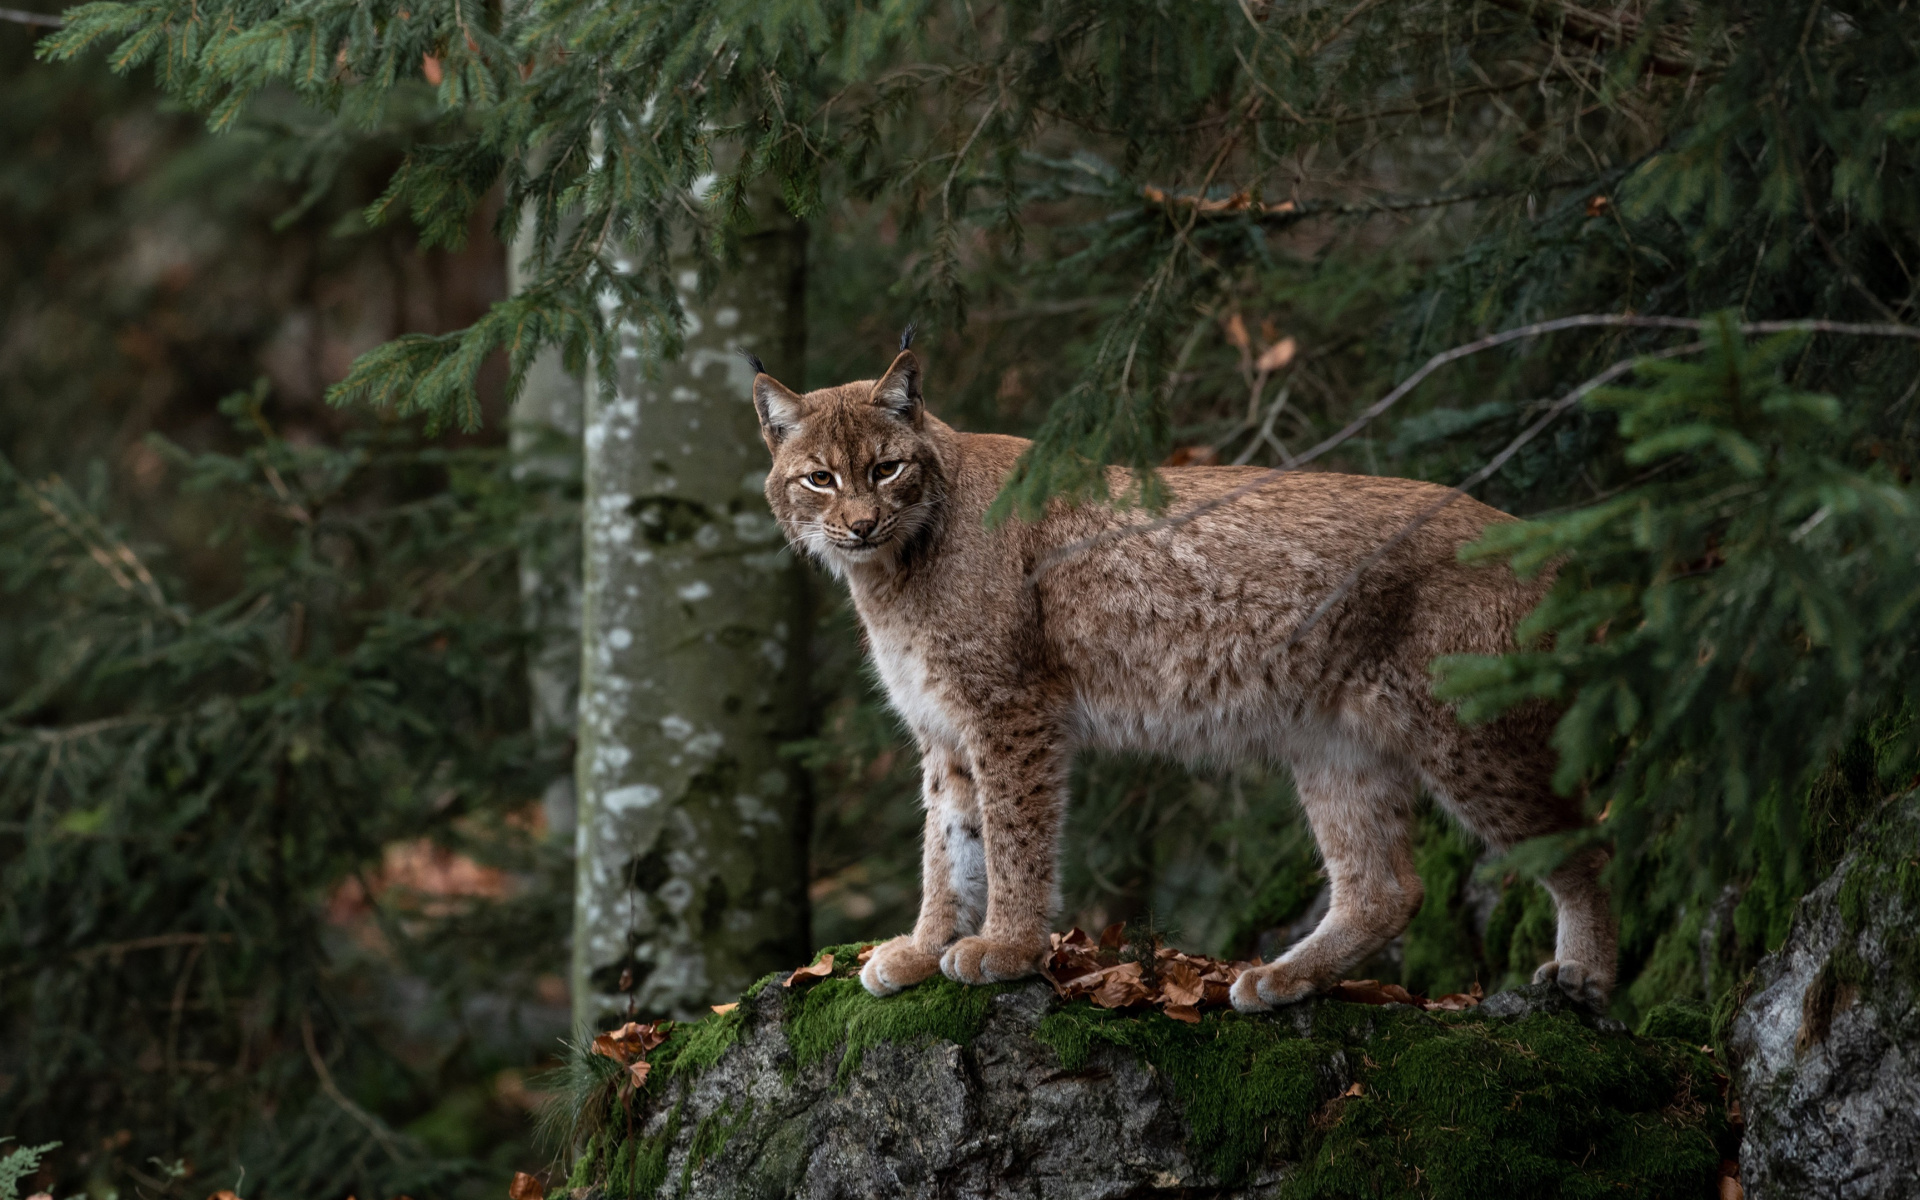 The common lynx